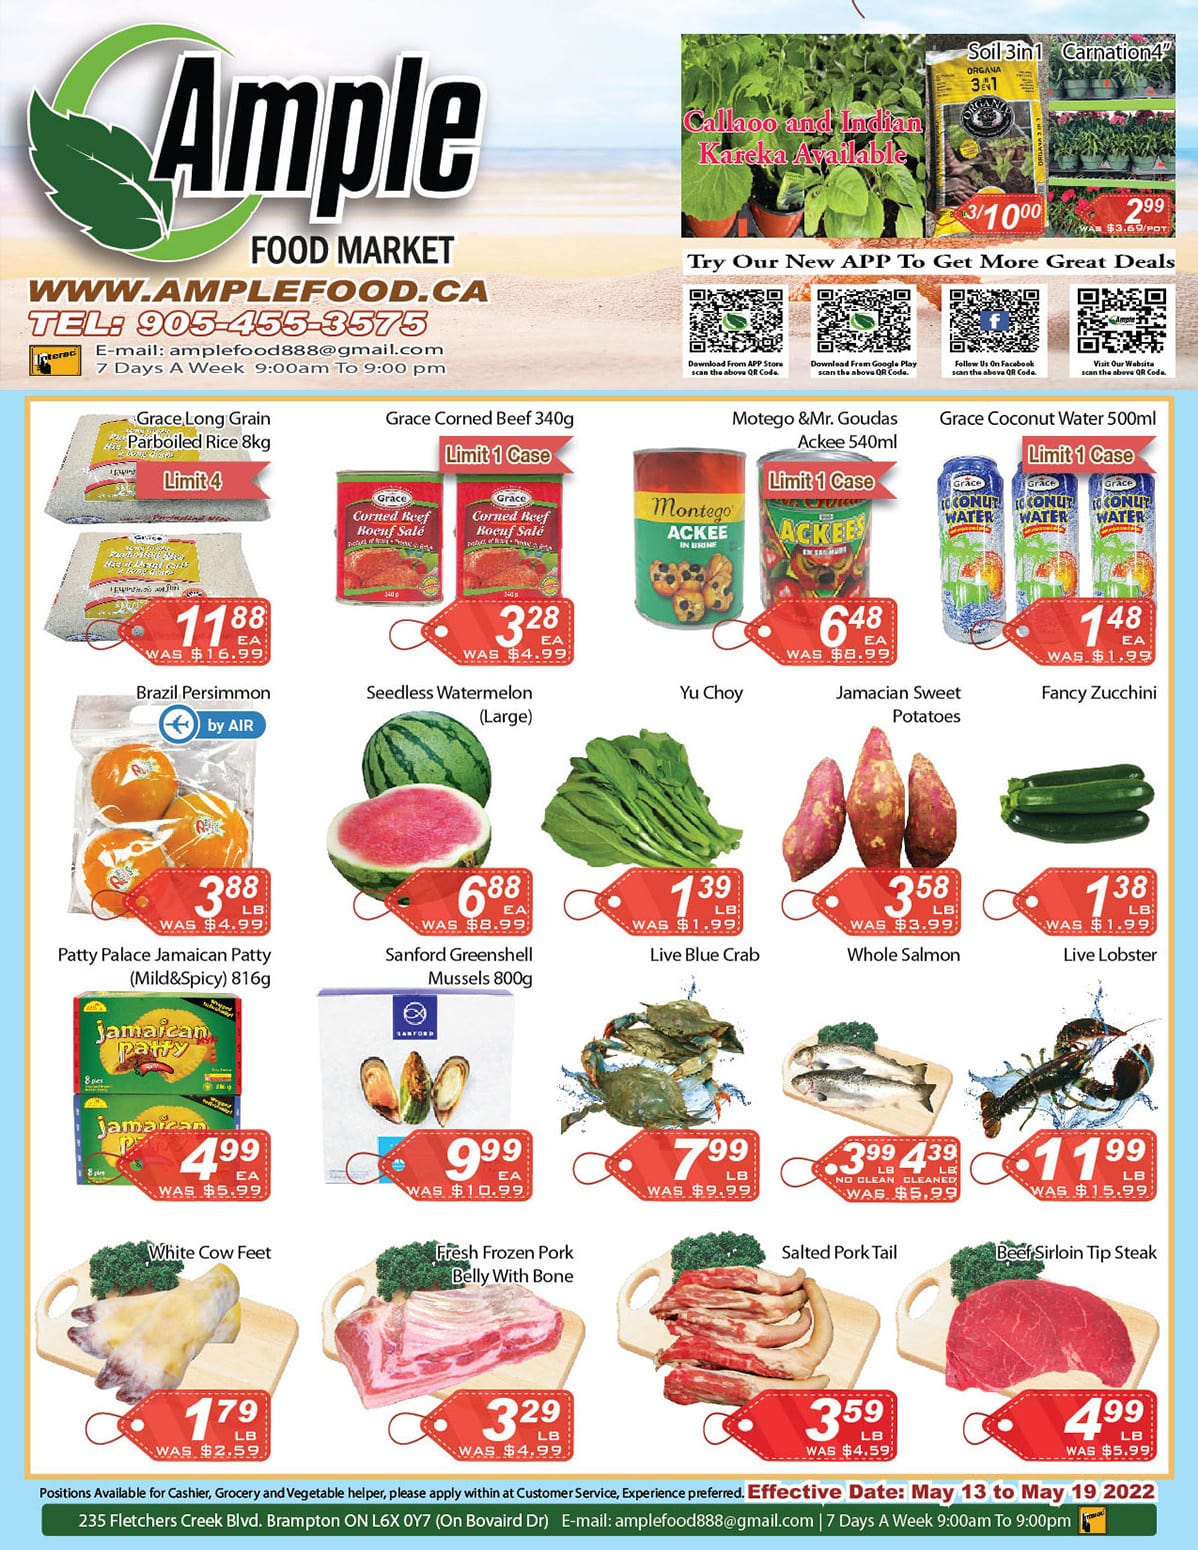 Image de la Promotion Ample Food Market Brampton - Weekly Flyer Specials